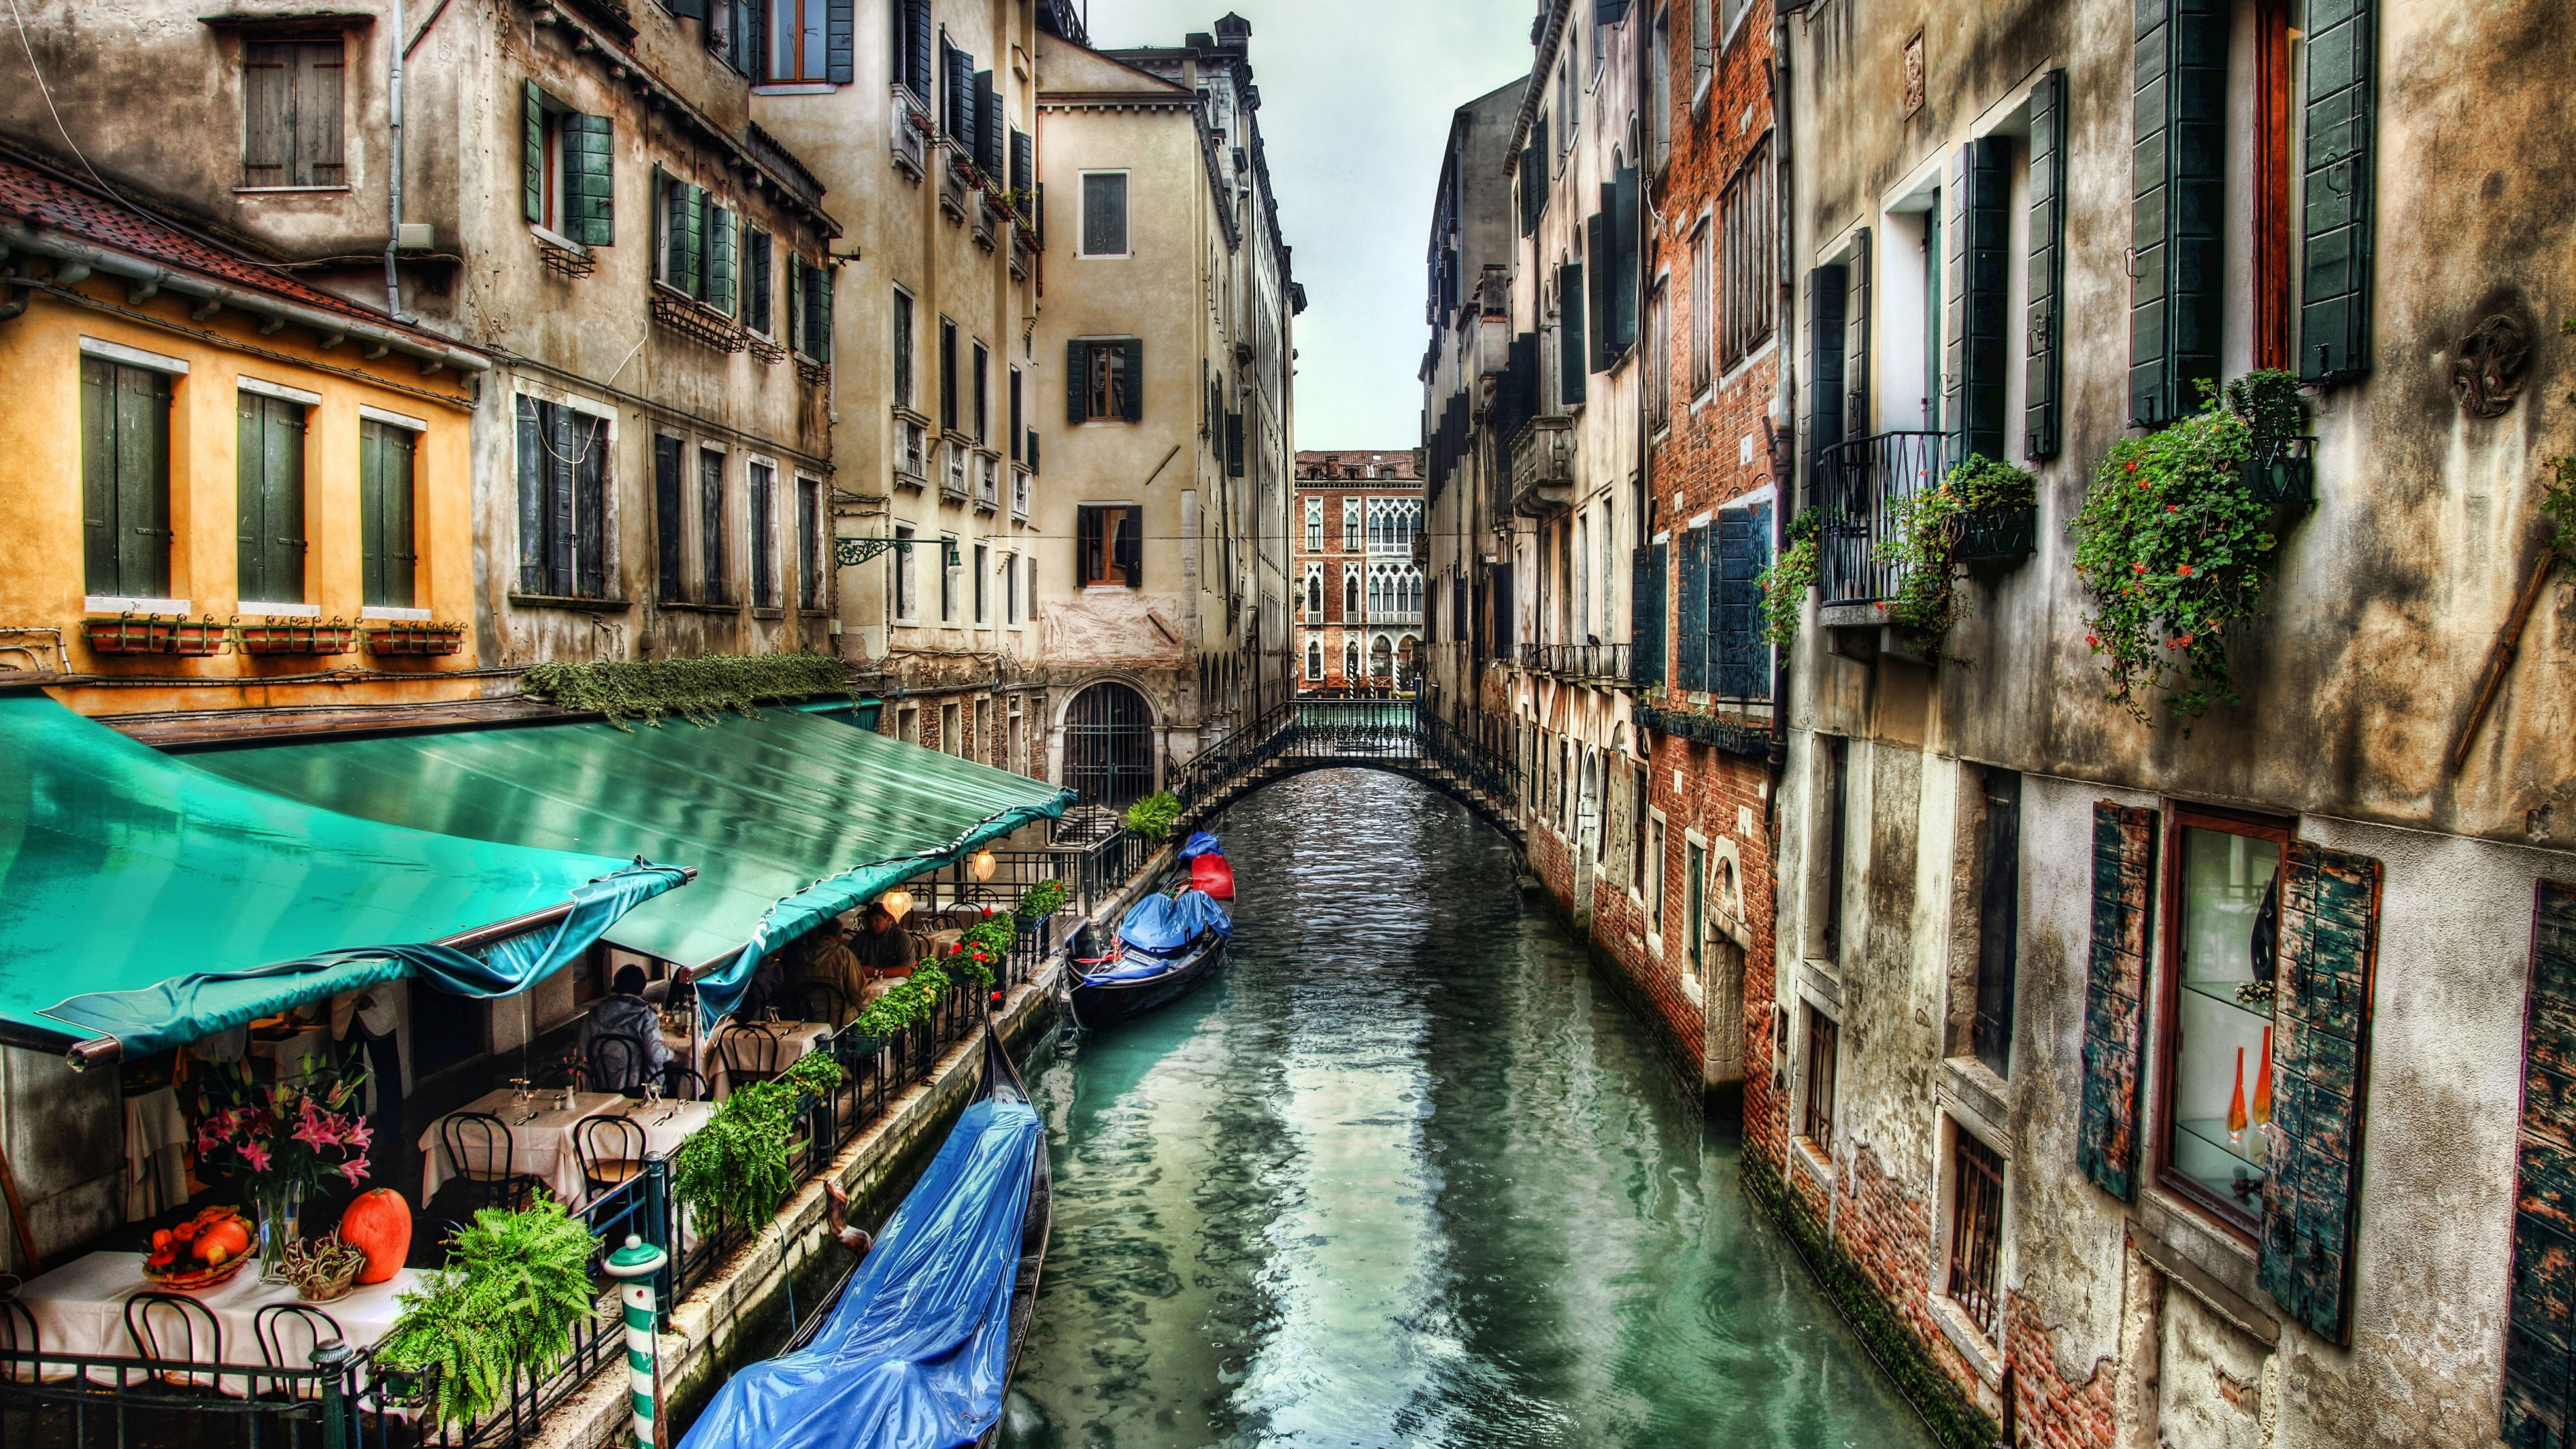 威尼斯, 运河, 滑雪缆车, 巷子里, 旅游业 壁纸 3840x2160 允许